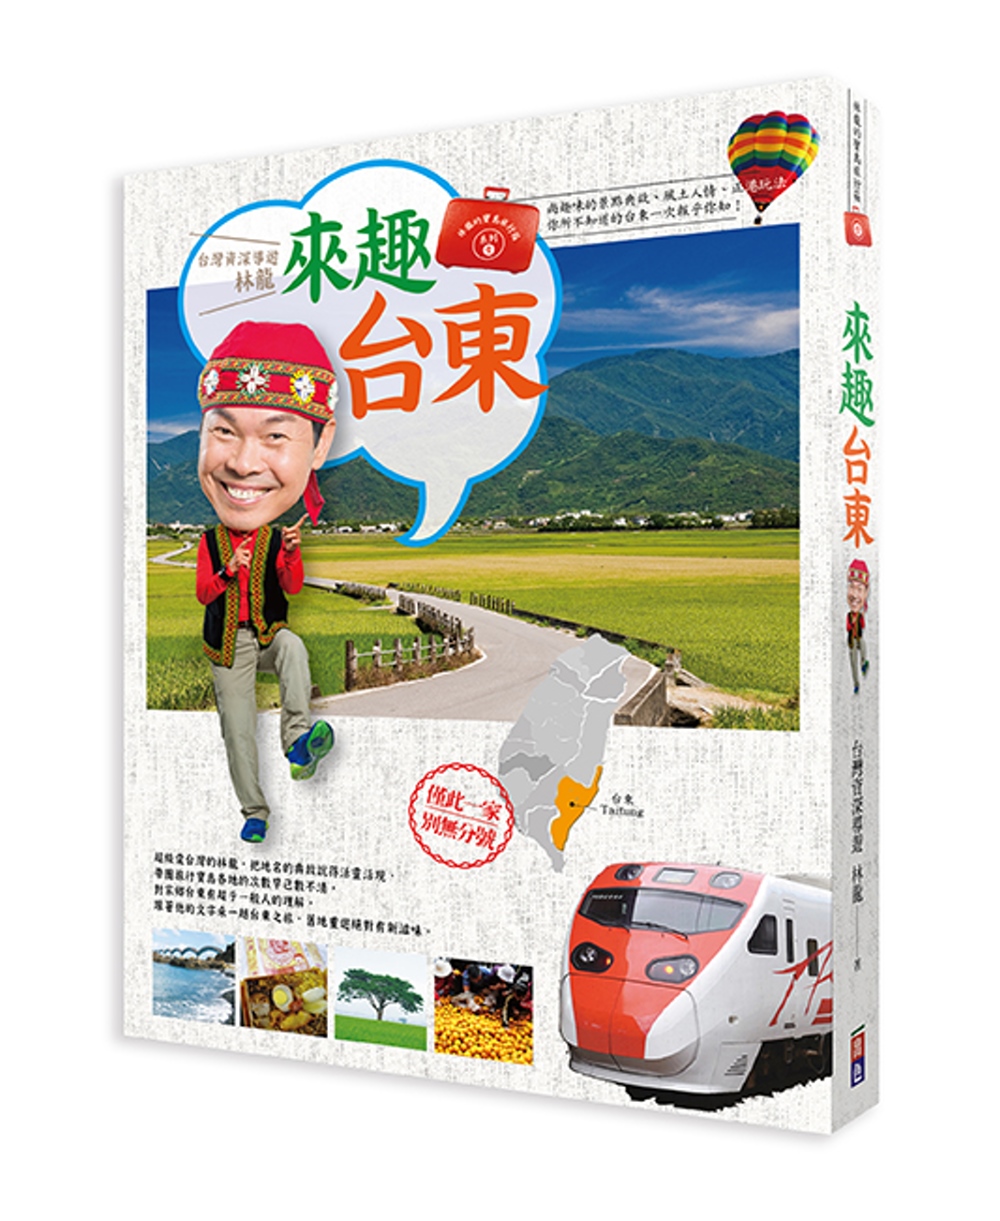 林龍的寶島旅行箱系列1-來趣台東：尚趣味的景點典故、風土人情...